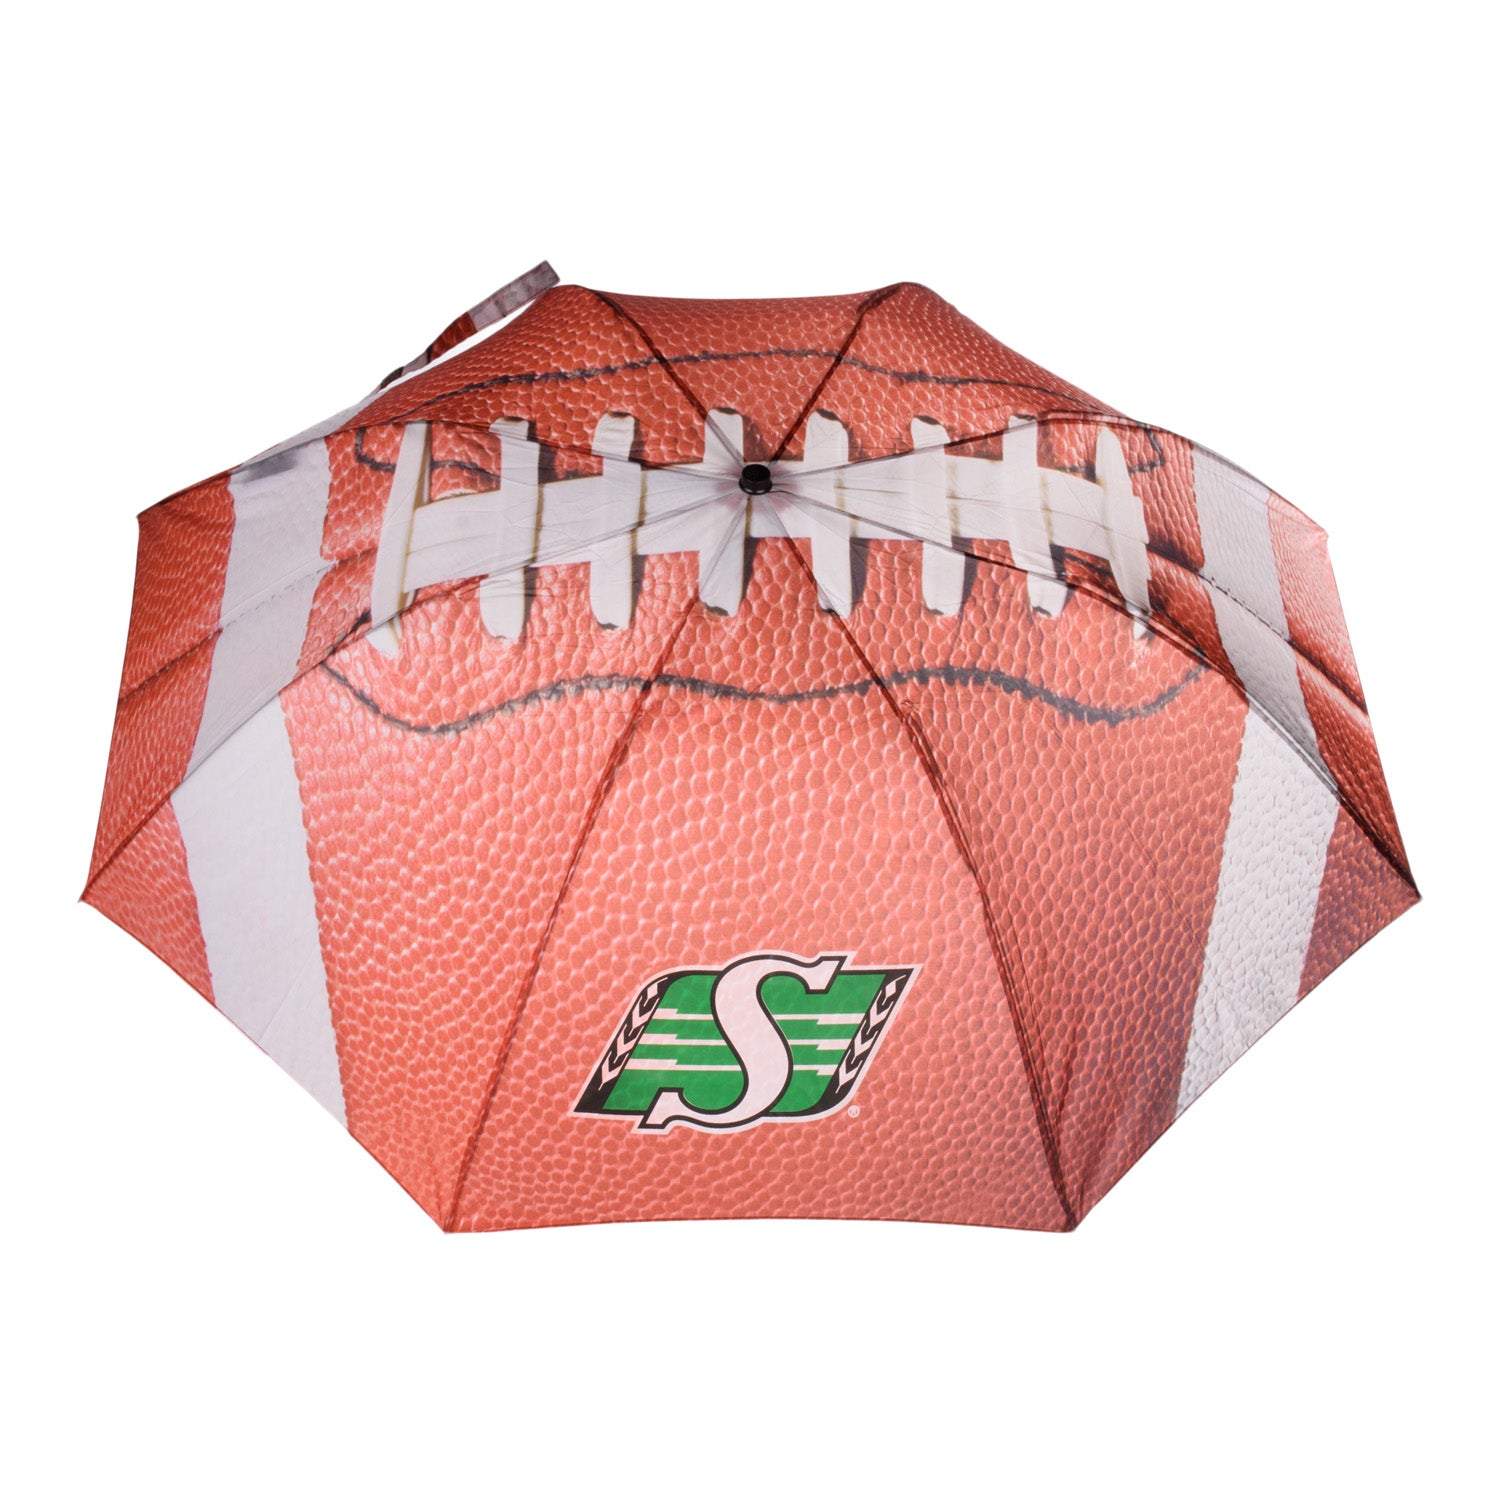 Football Canopy Umbrella